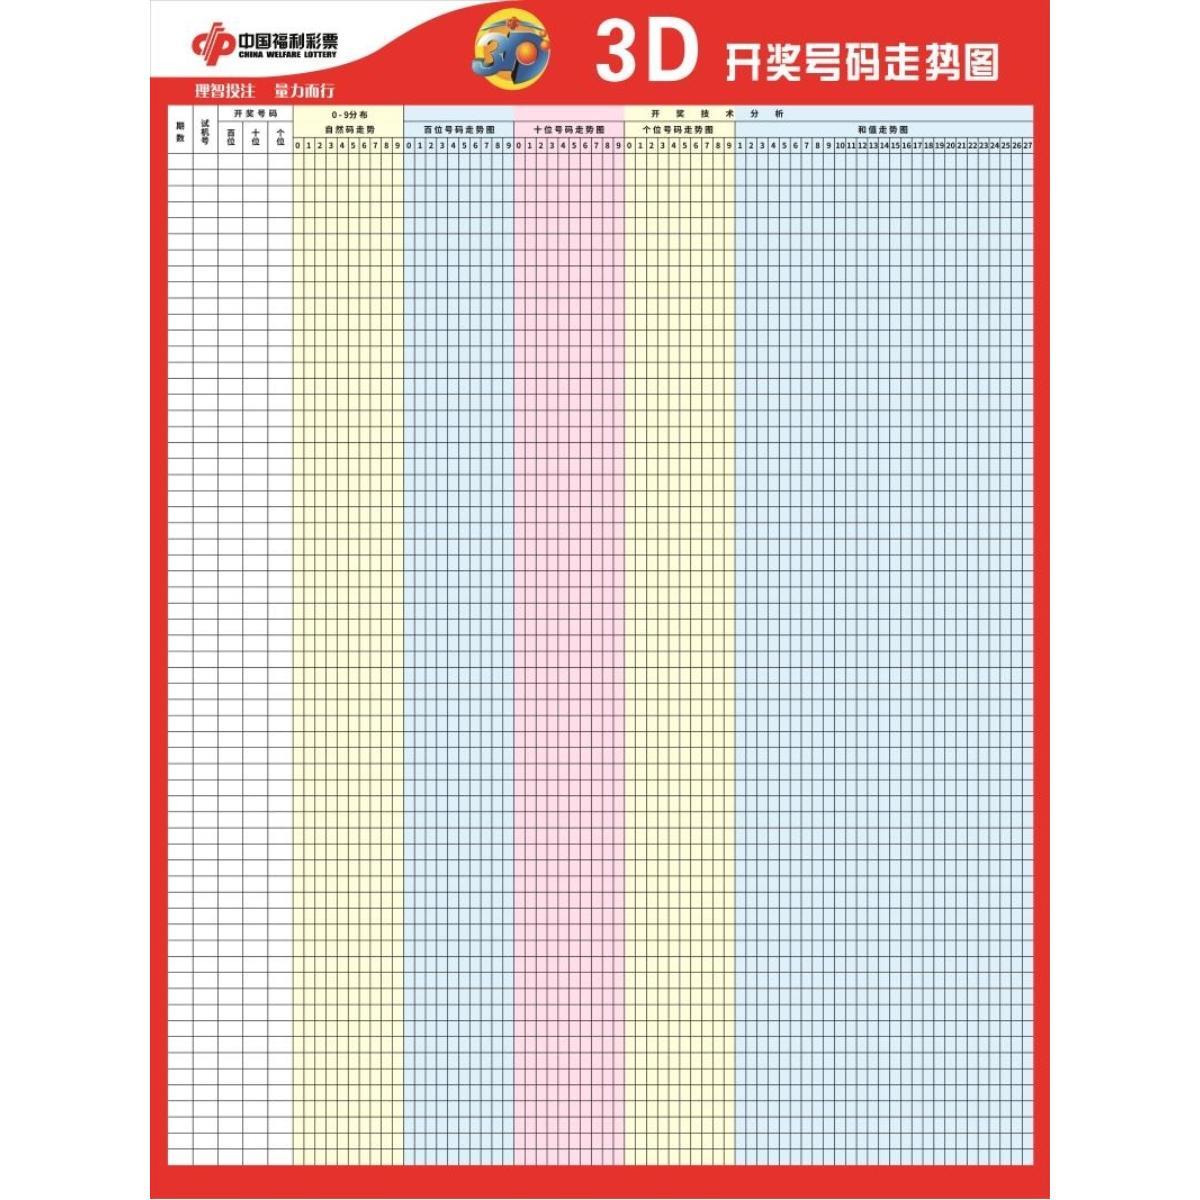 中国福利彩票 3D开奖号码走势图 海报 福彩3D走势图 展板 装饰画